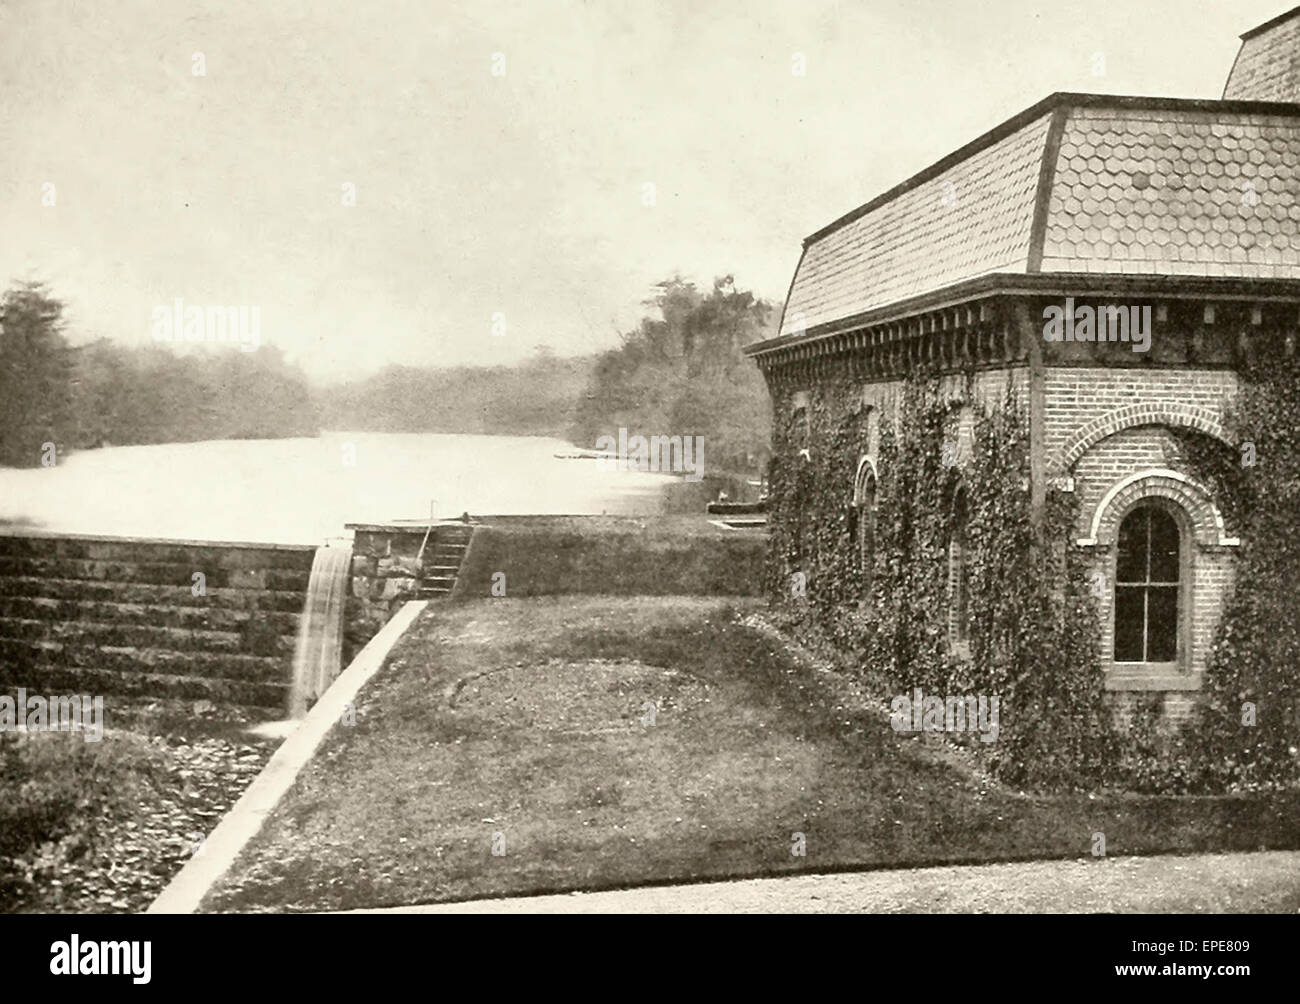 Weston's Mills - Sorgente di acqua per New Brunswick, NJ, circa 1905 Foto Stock